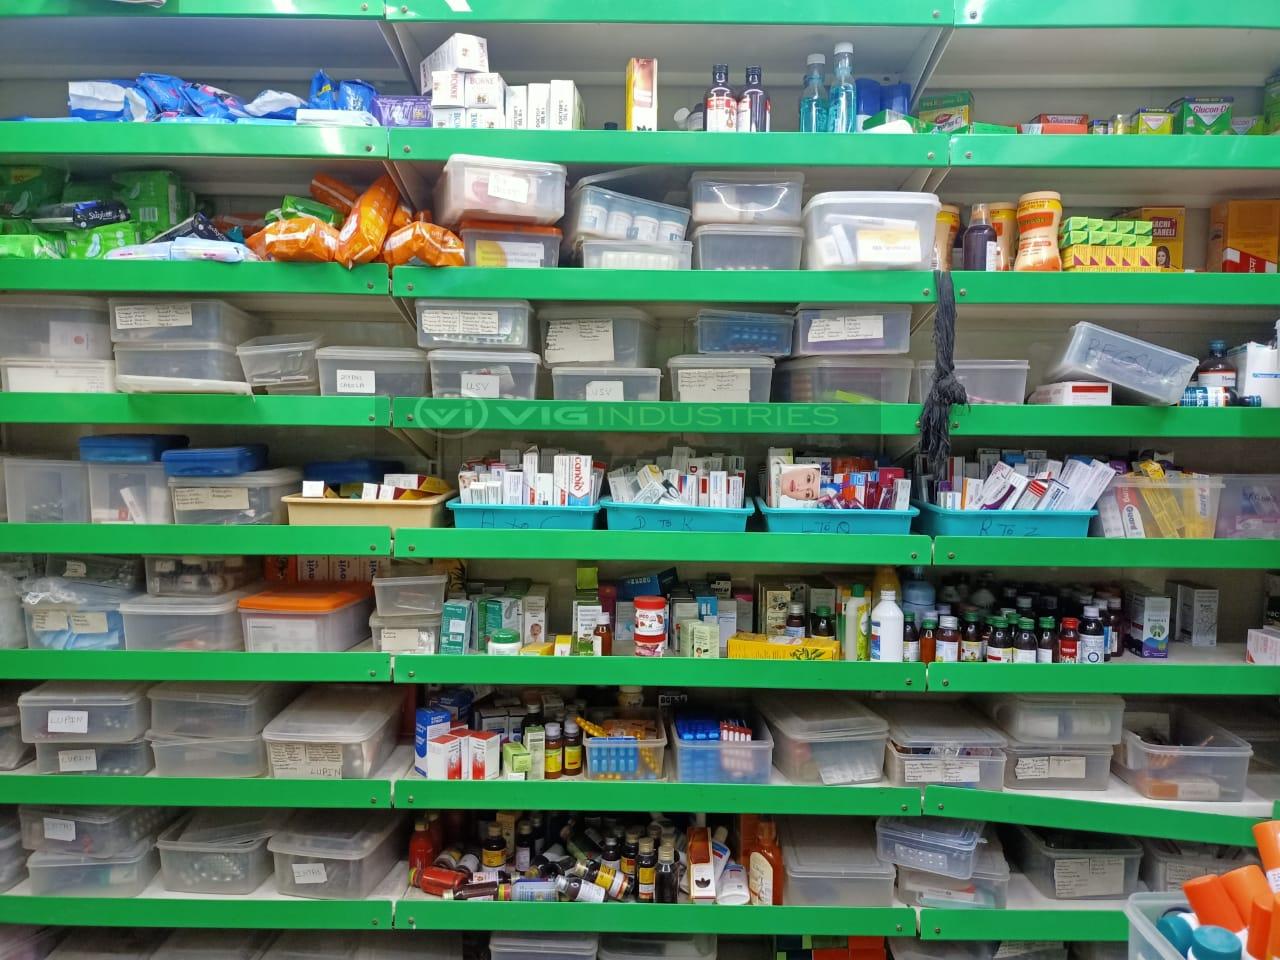 Pharmacy Rack